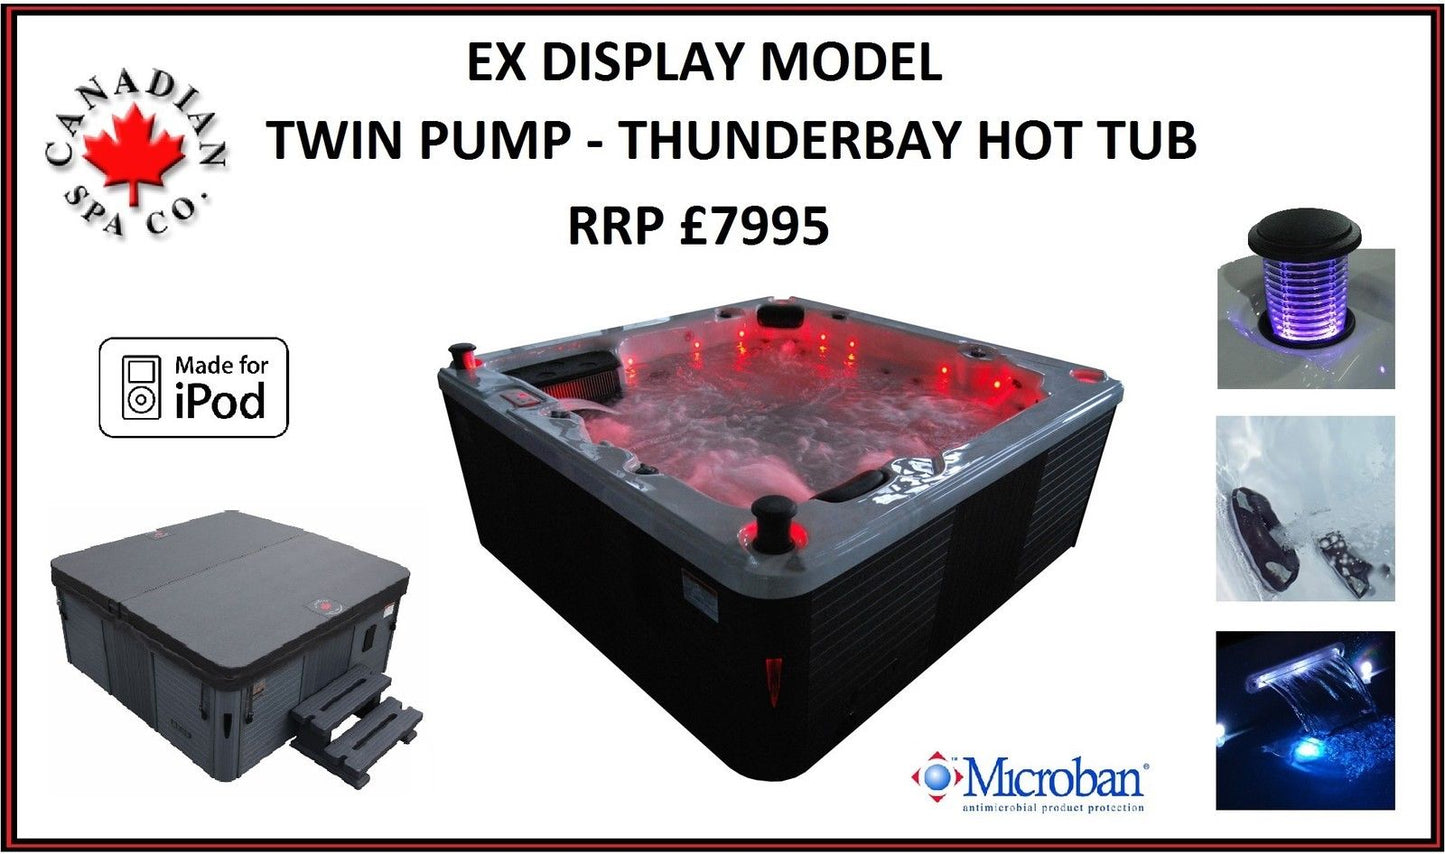 Ex Display Canadian Spa Thunderbay 6 Person Hot Tub - Twin Pump - 2yr Warranty